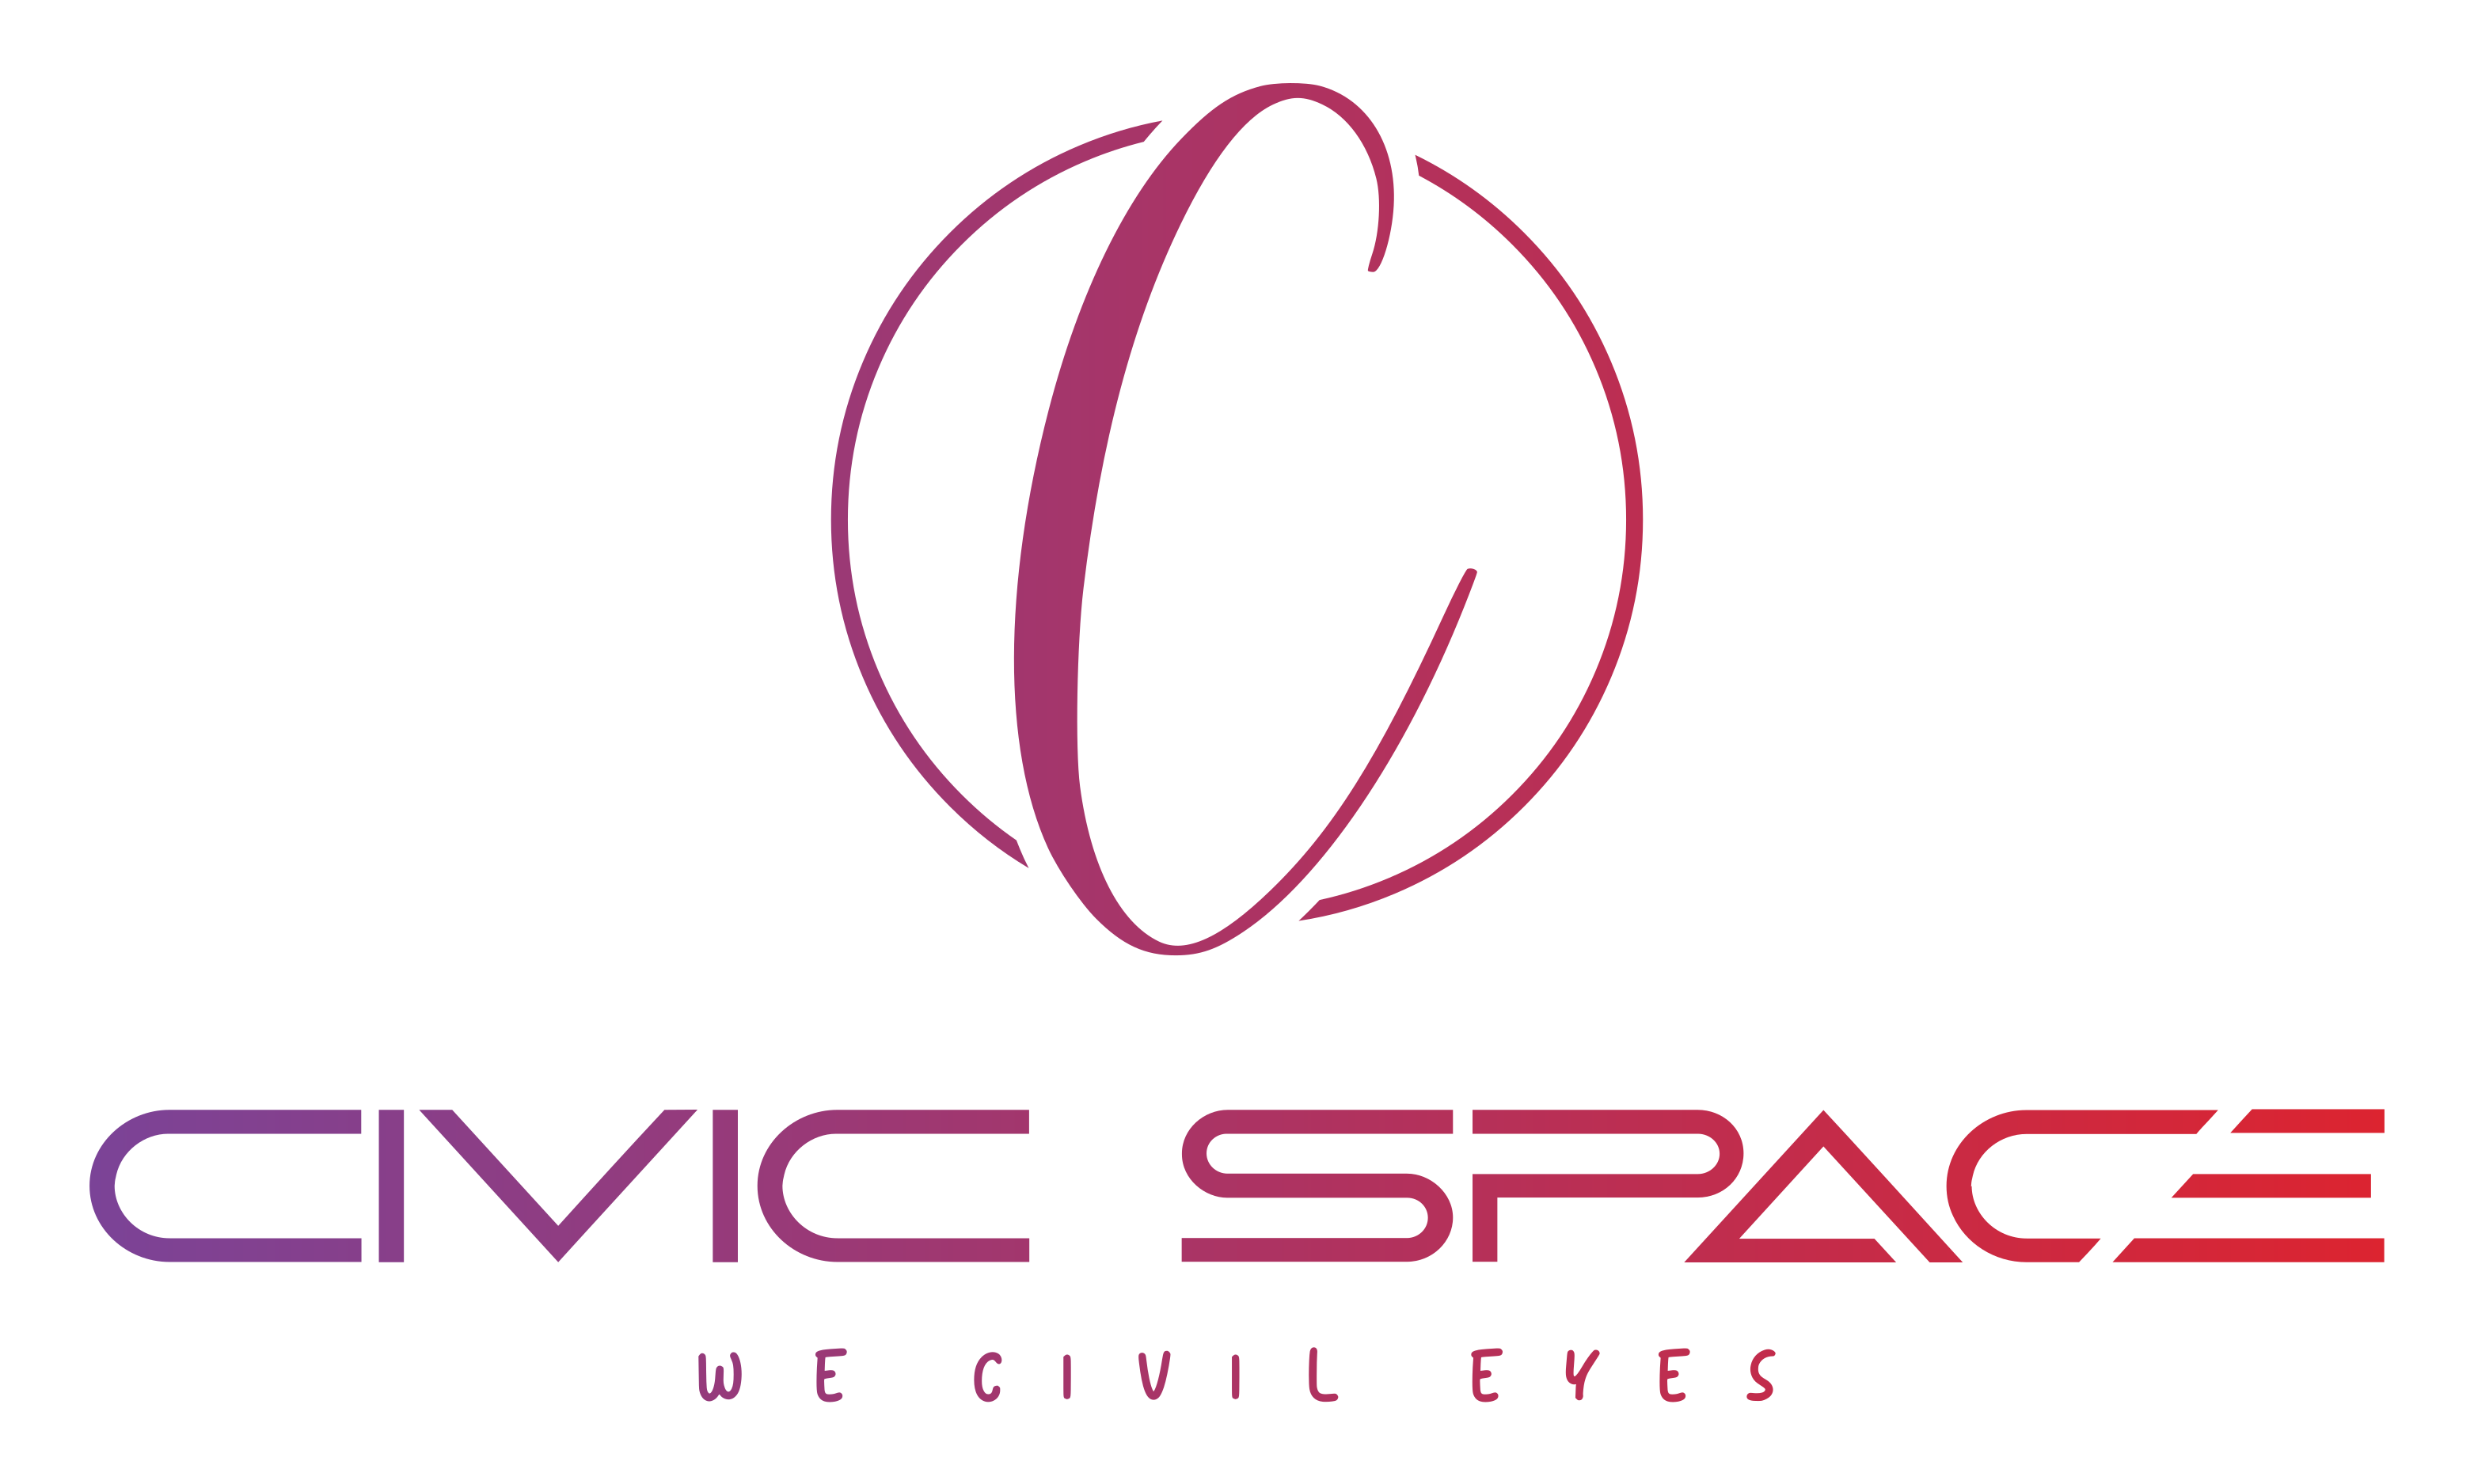 Civic Space logo - We civil eyes